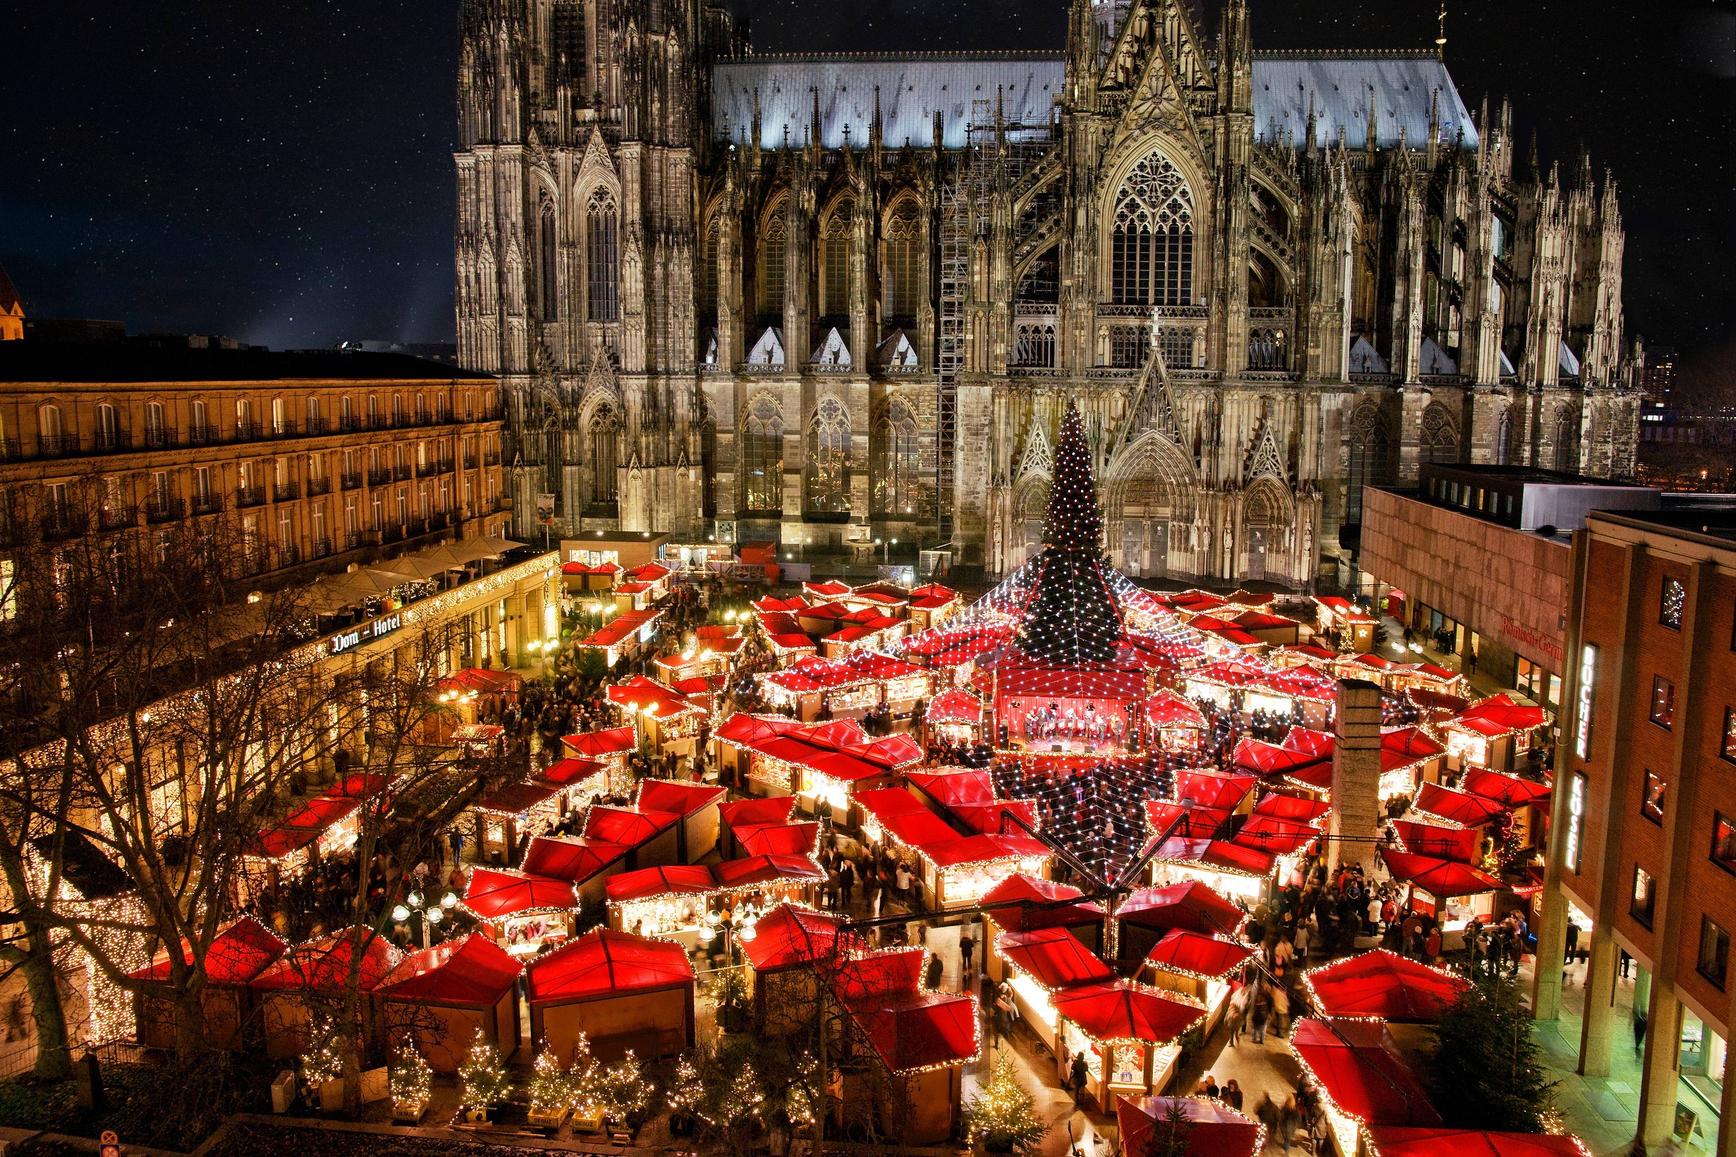 Điểm chợ lớn nhất nằm ở gần Giáo đường Cologne với hơn 160 quầy hàng bán đủ các món đồ cho dịp lễ, từ món đồ uống nóng Glühwein nhiều hương vị cho đến các quả cầu tuyết trang trí Giáng Sinh.